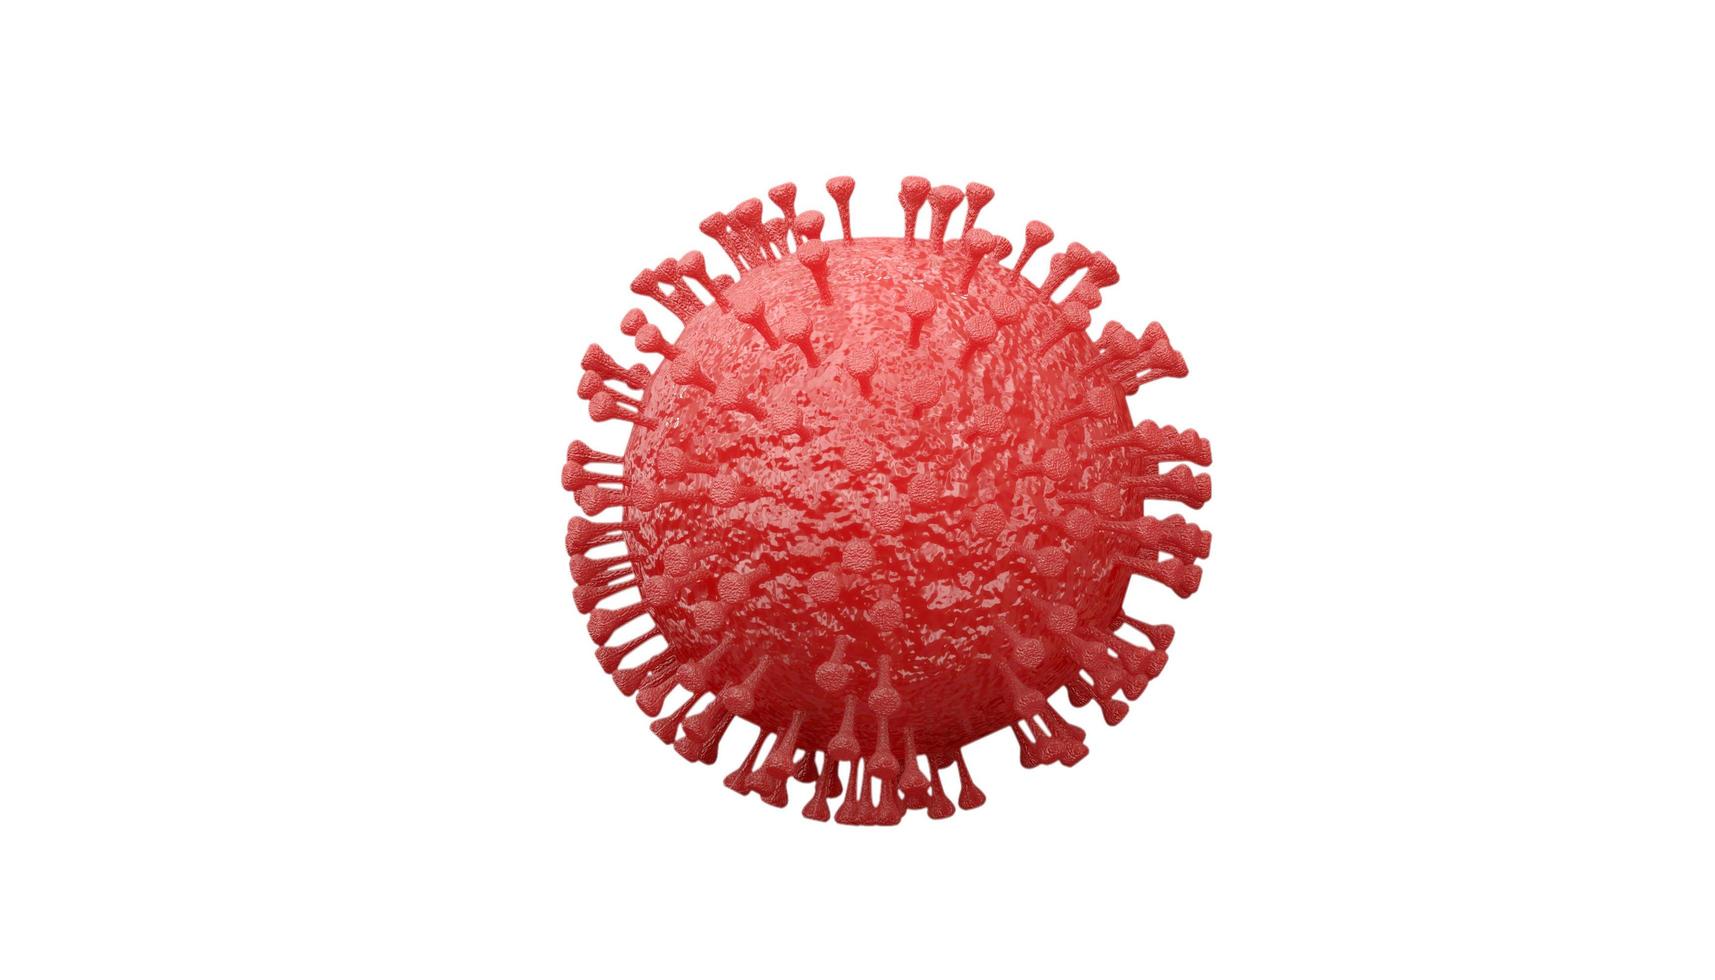 nome coronavírus covid 19 isolado no fundo branco - renderização em 3d foto